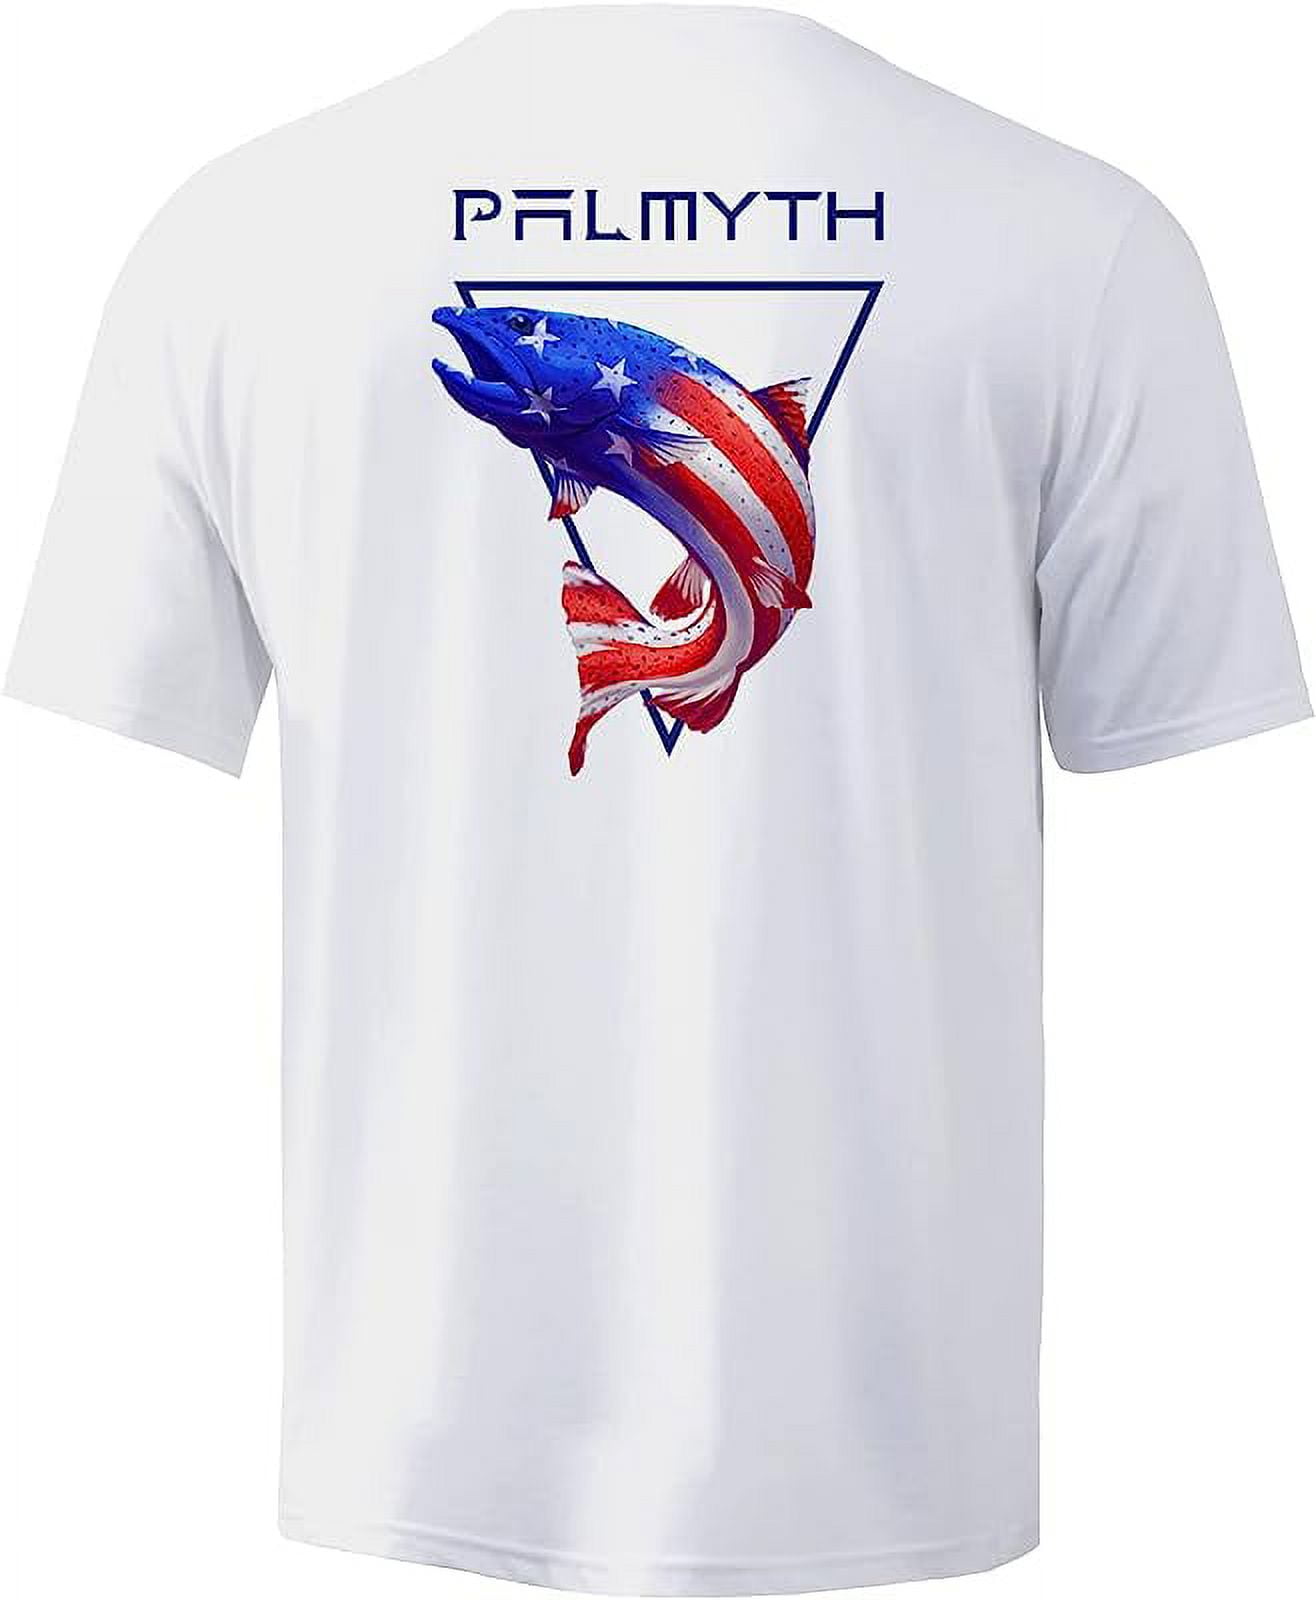 Palmyth Men's Fishing Shirt Short Sleeve Sun Protection UV UPF